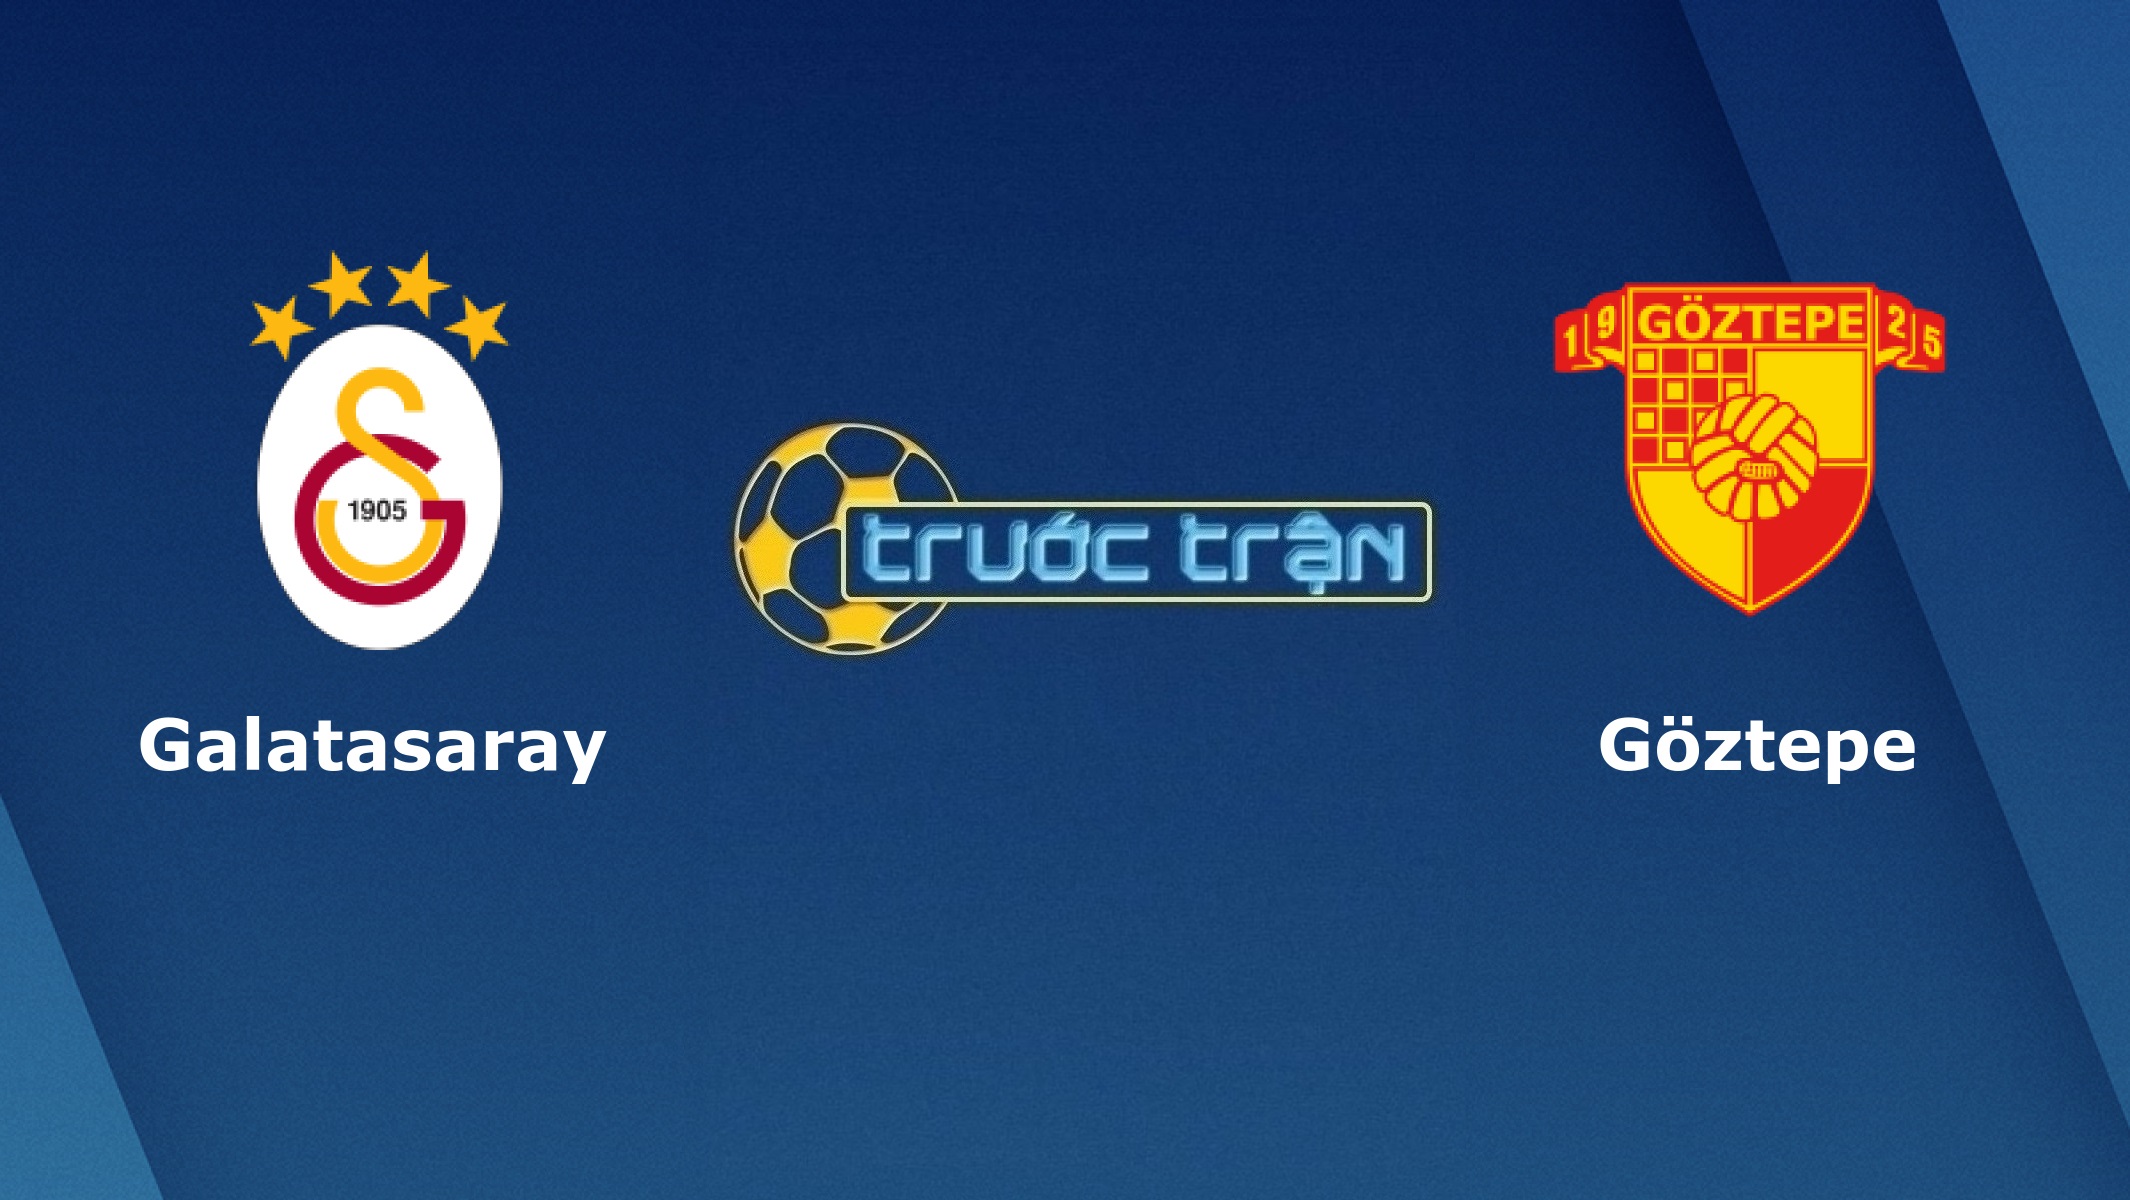 Galatasaray vs Goztepe – Tip kèo bóng đá hôm nay – 23h00 22/12/2020